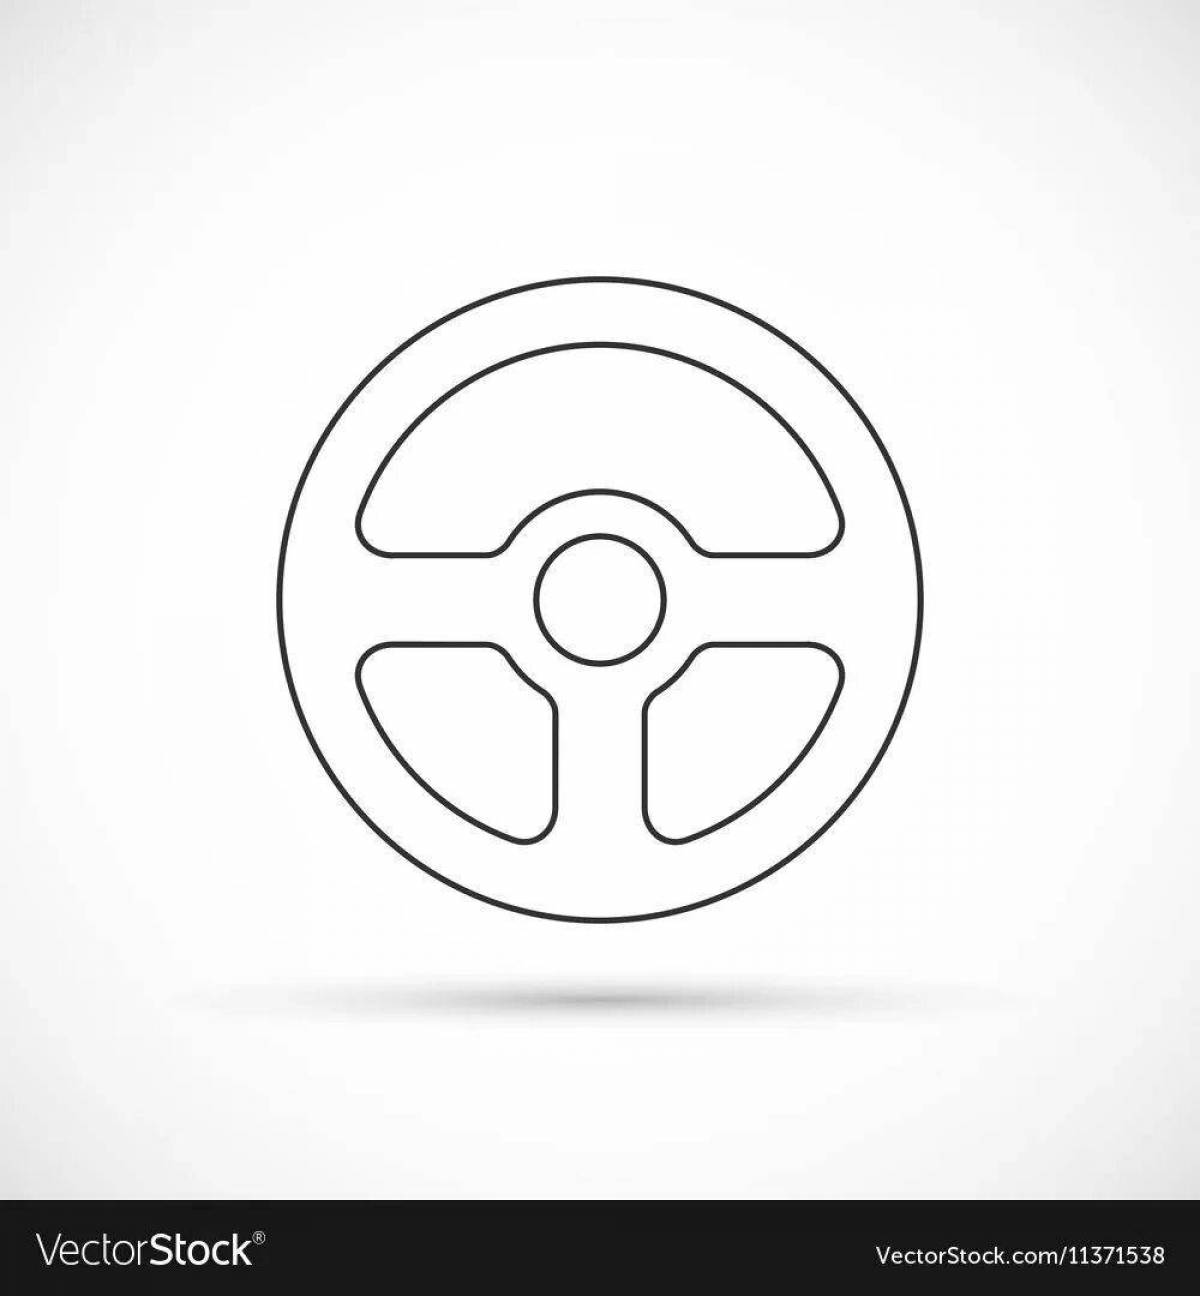 Steering wheel for children car #2